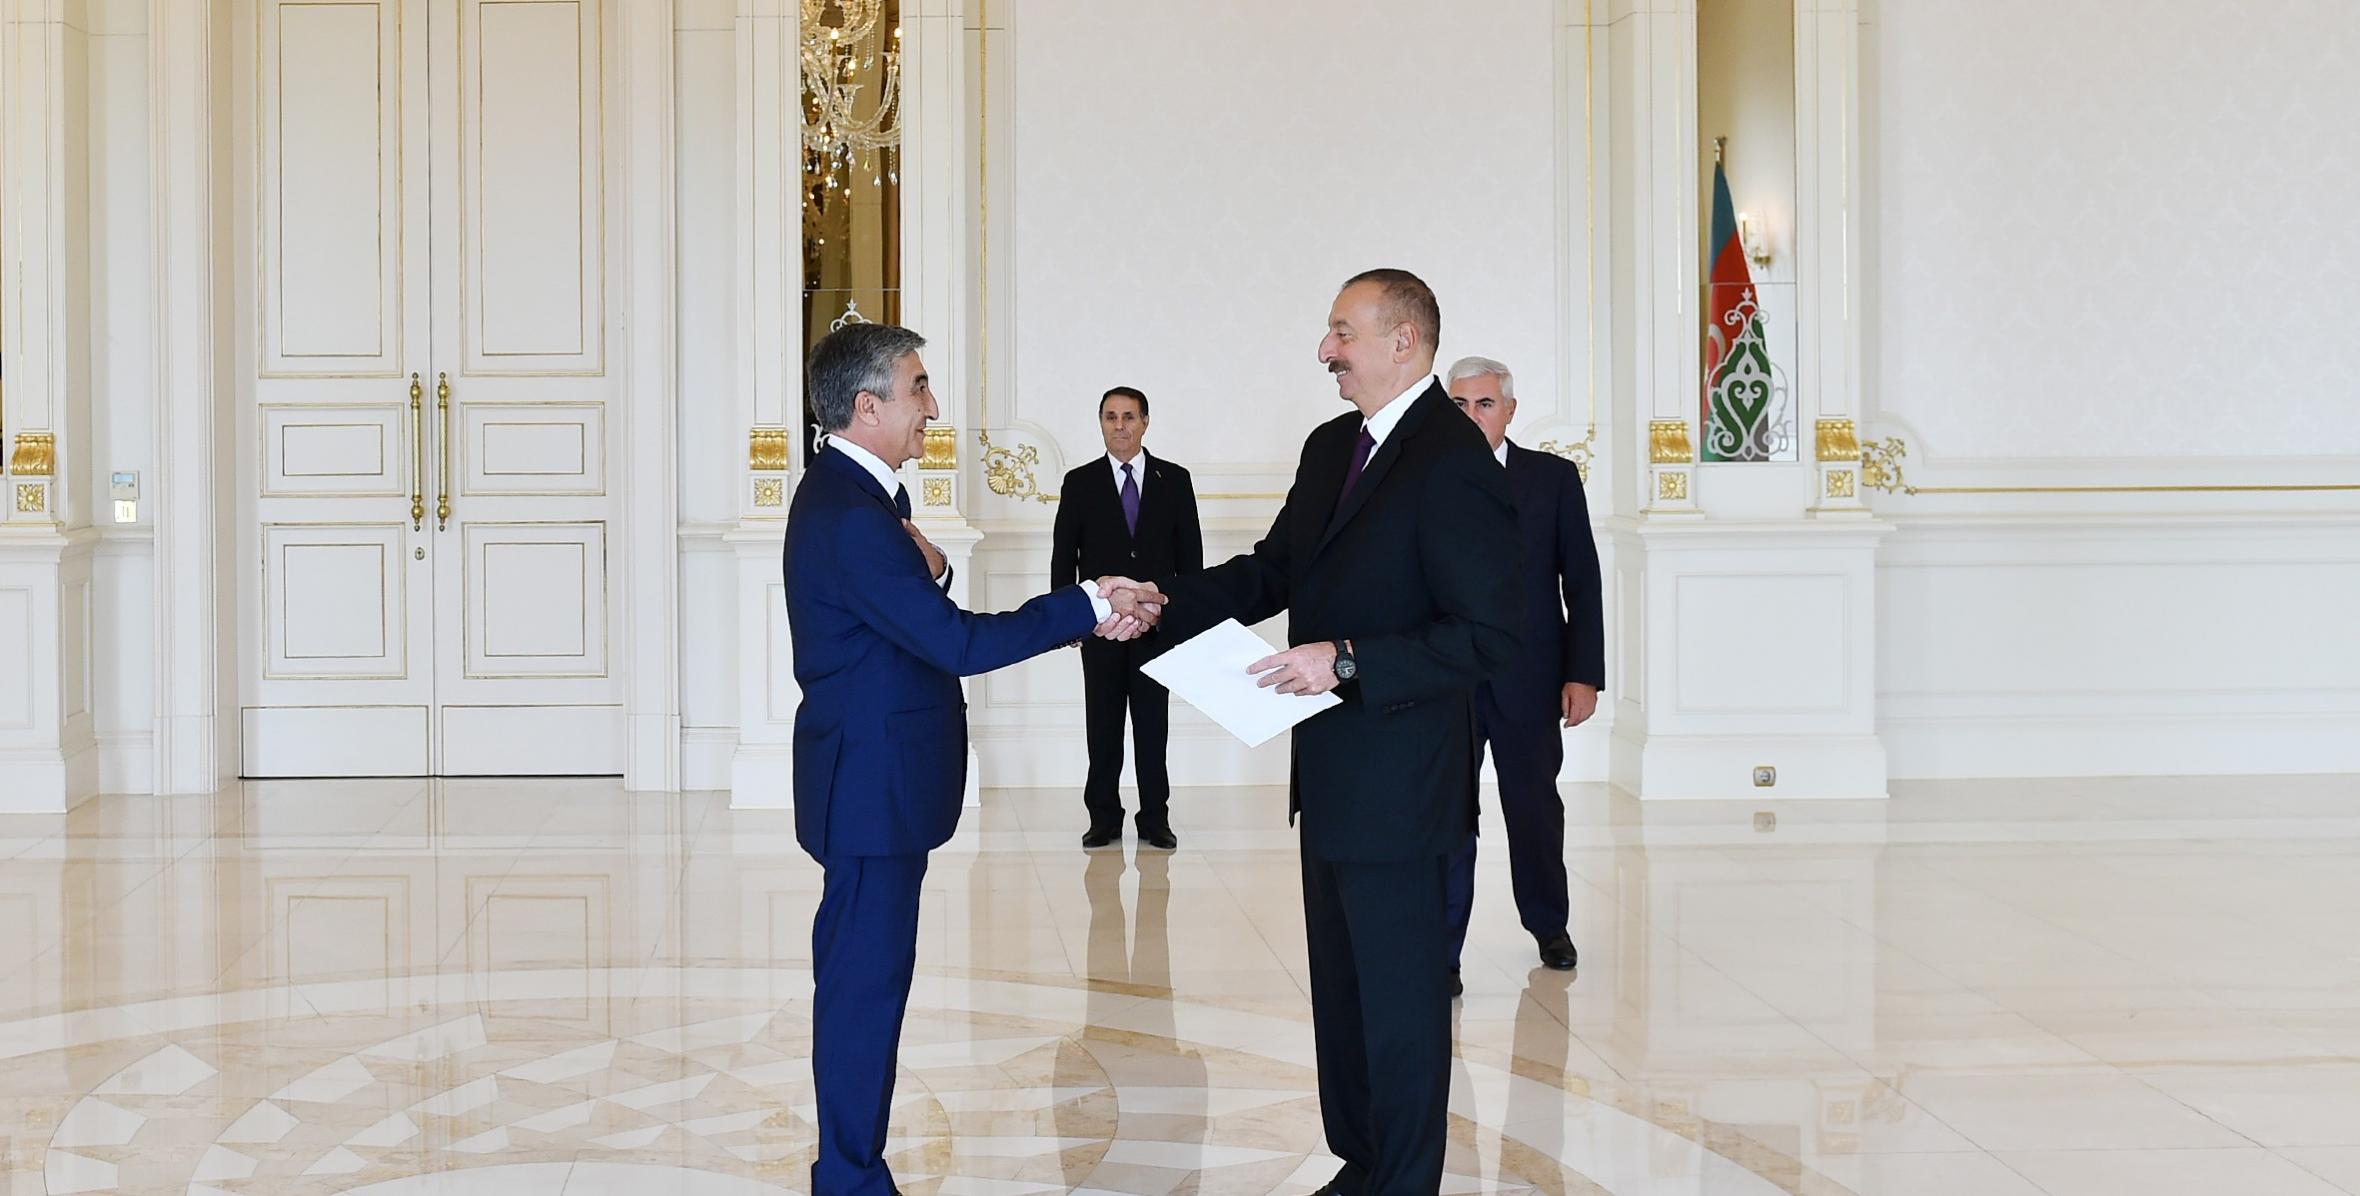 Ильхам Алиев принял верительные грамоты новоназначенного посла Таджикистана в Азербайджане